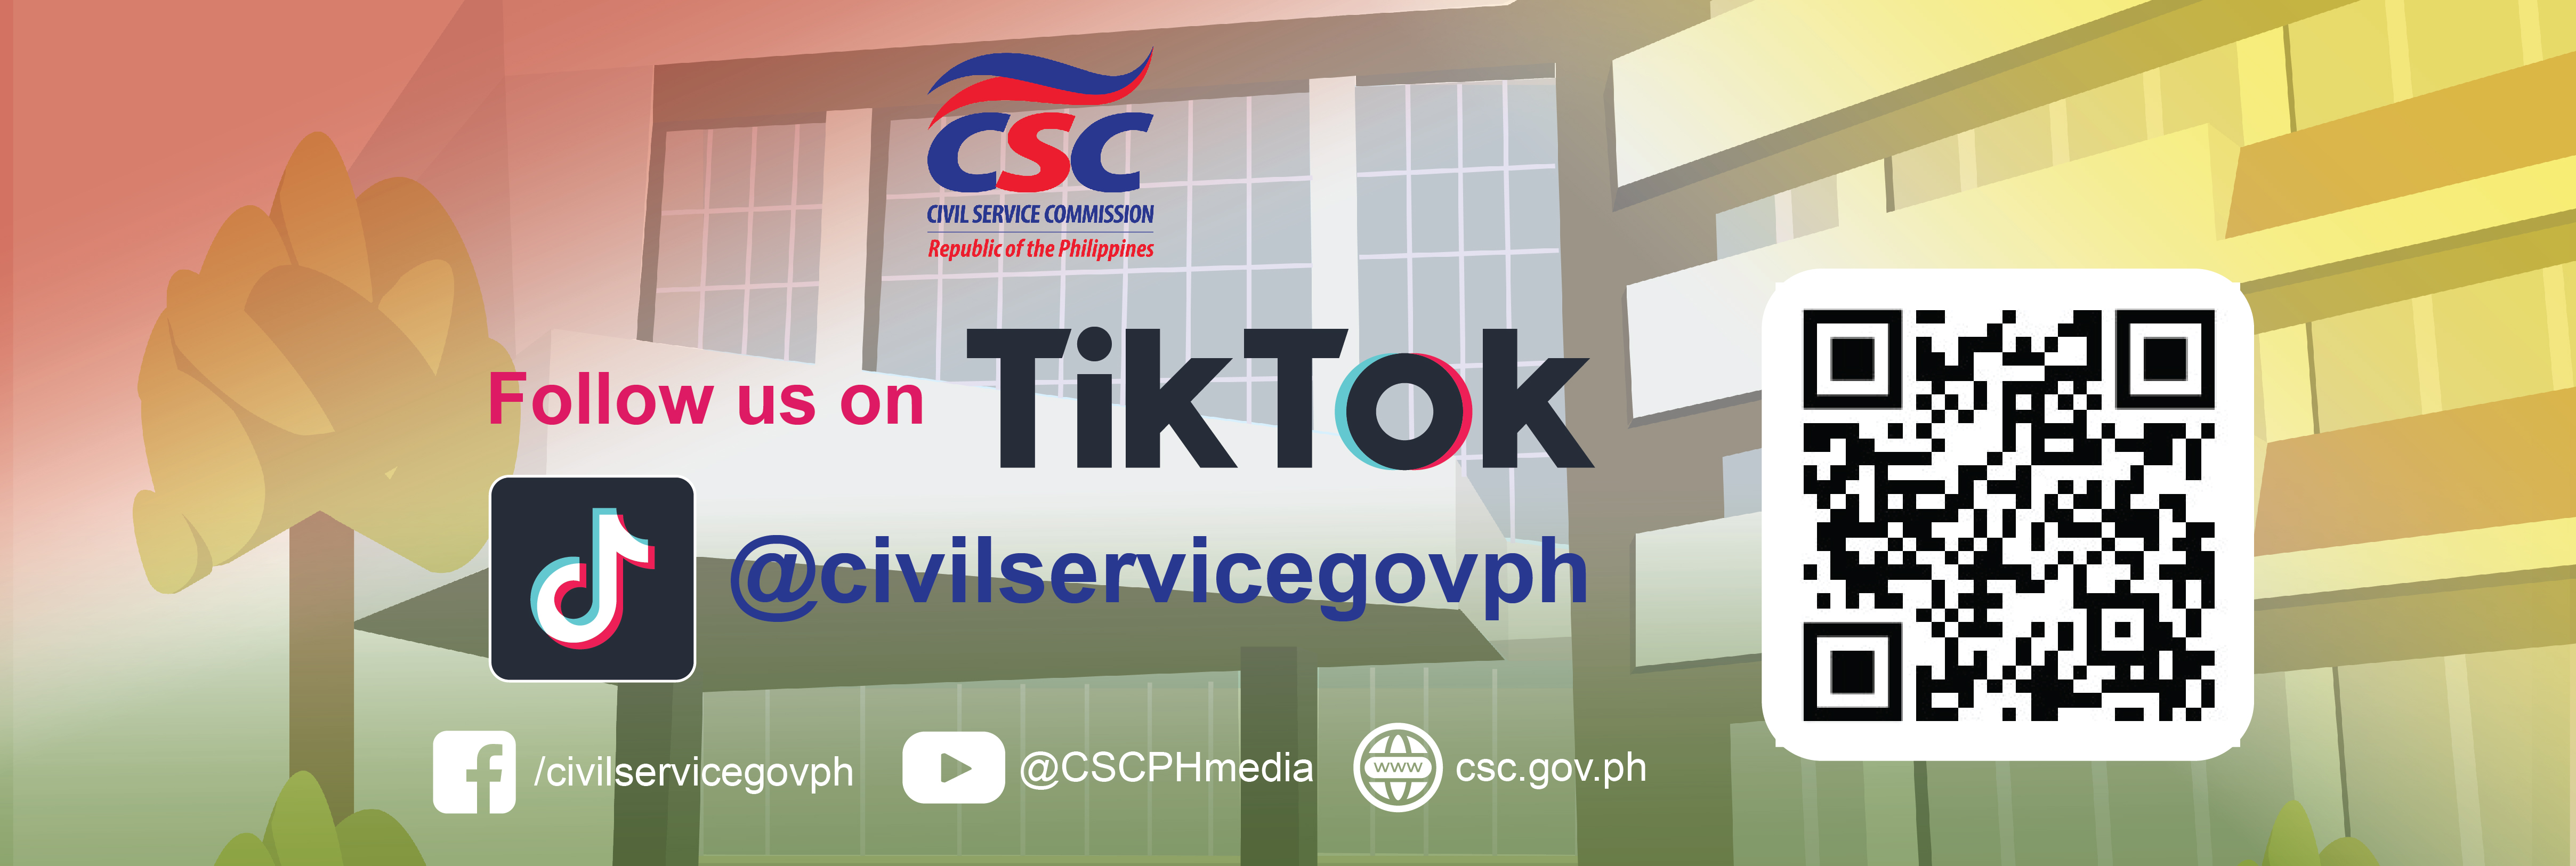 CSC is now on TikTok!